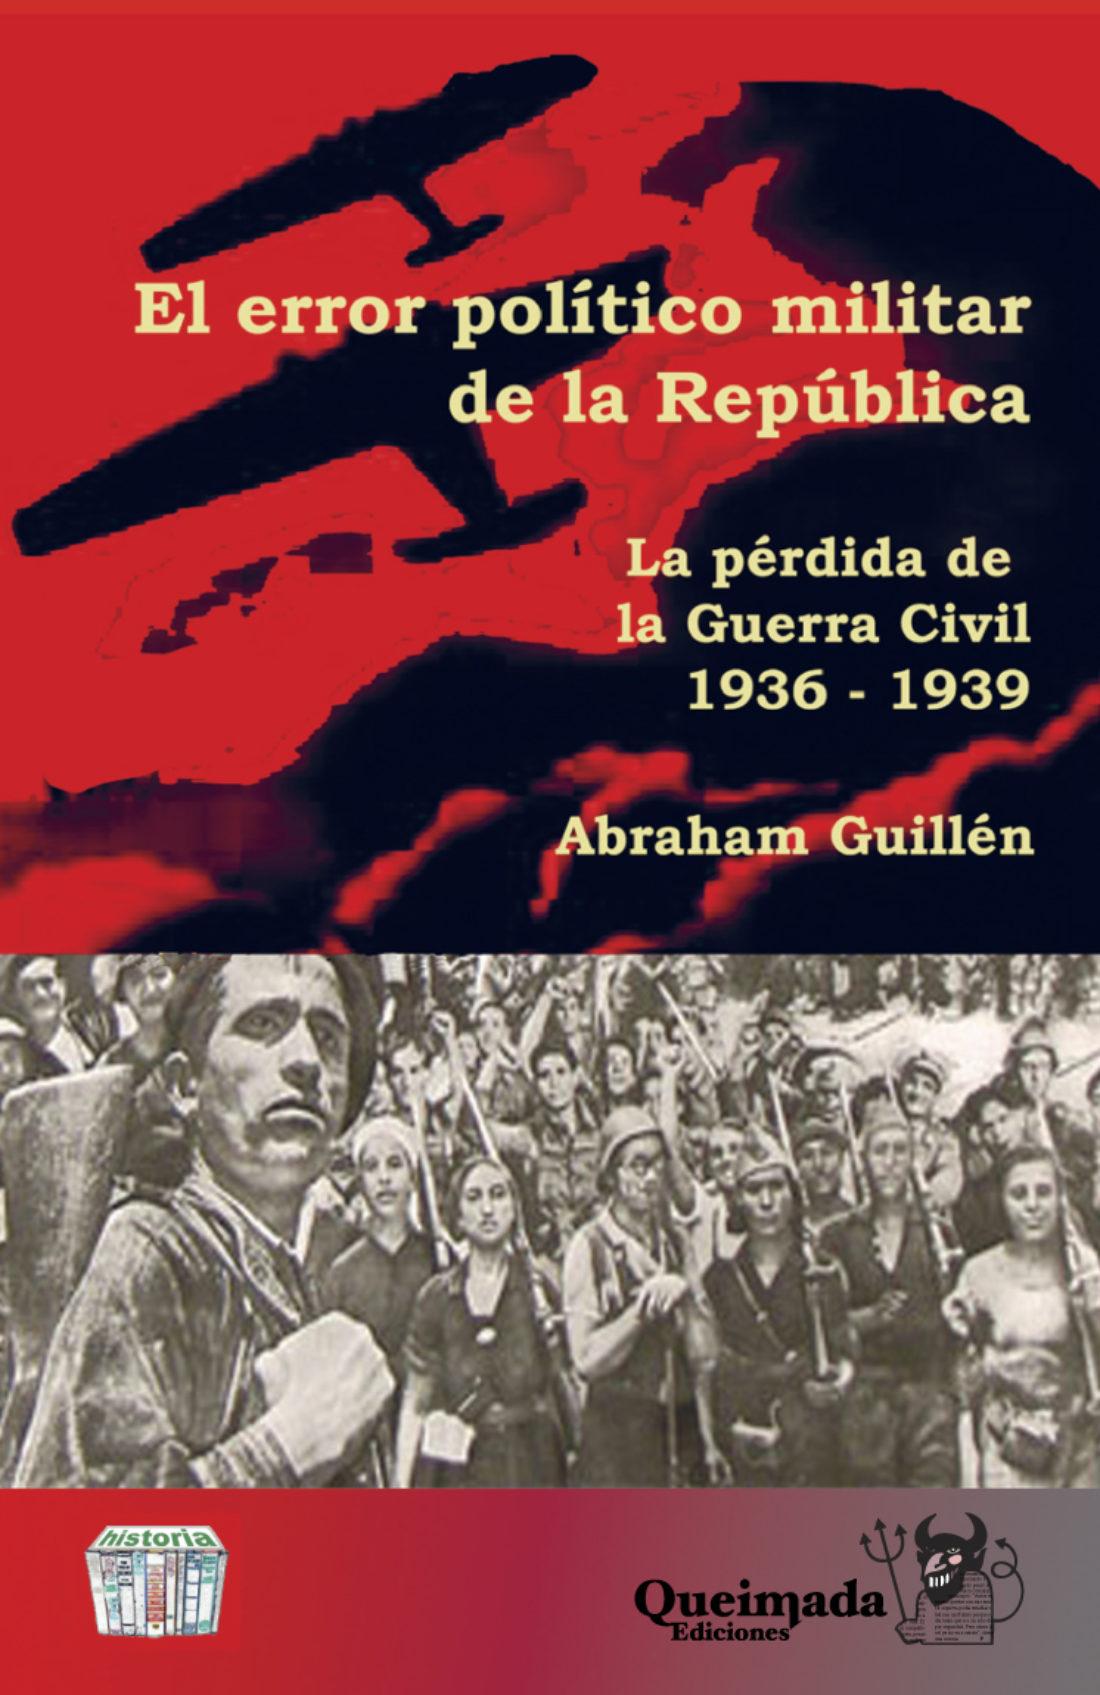 Presentación: Anarquistas vengadores y El error político militar de la República